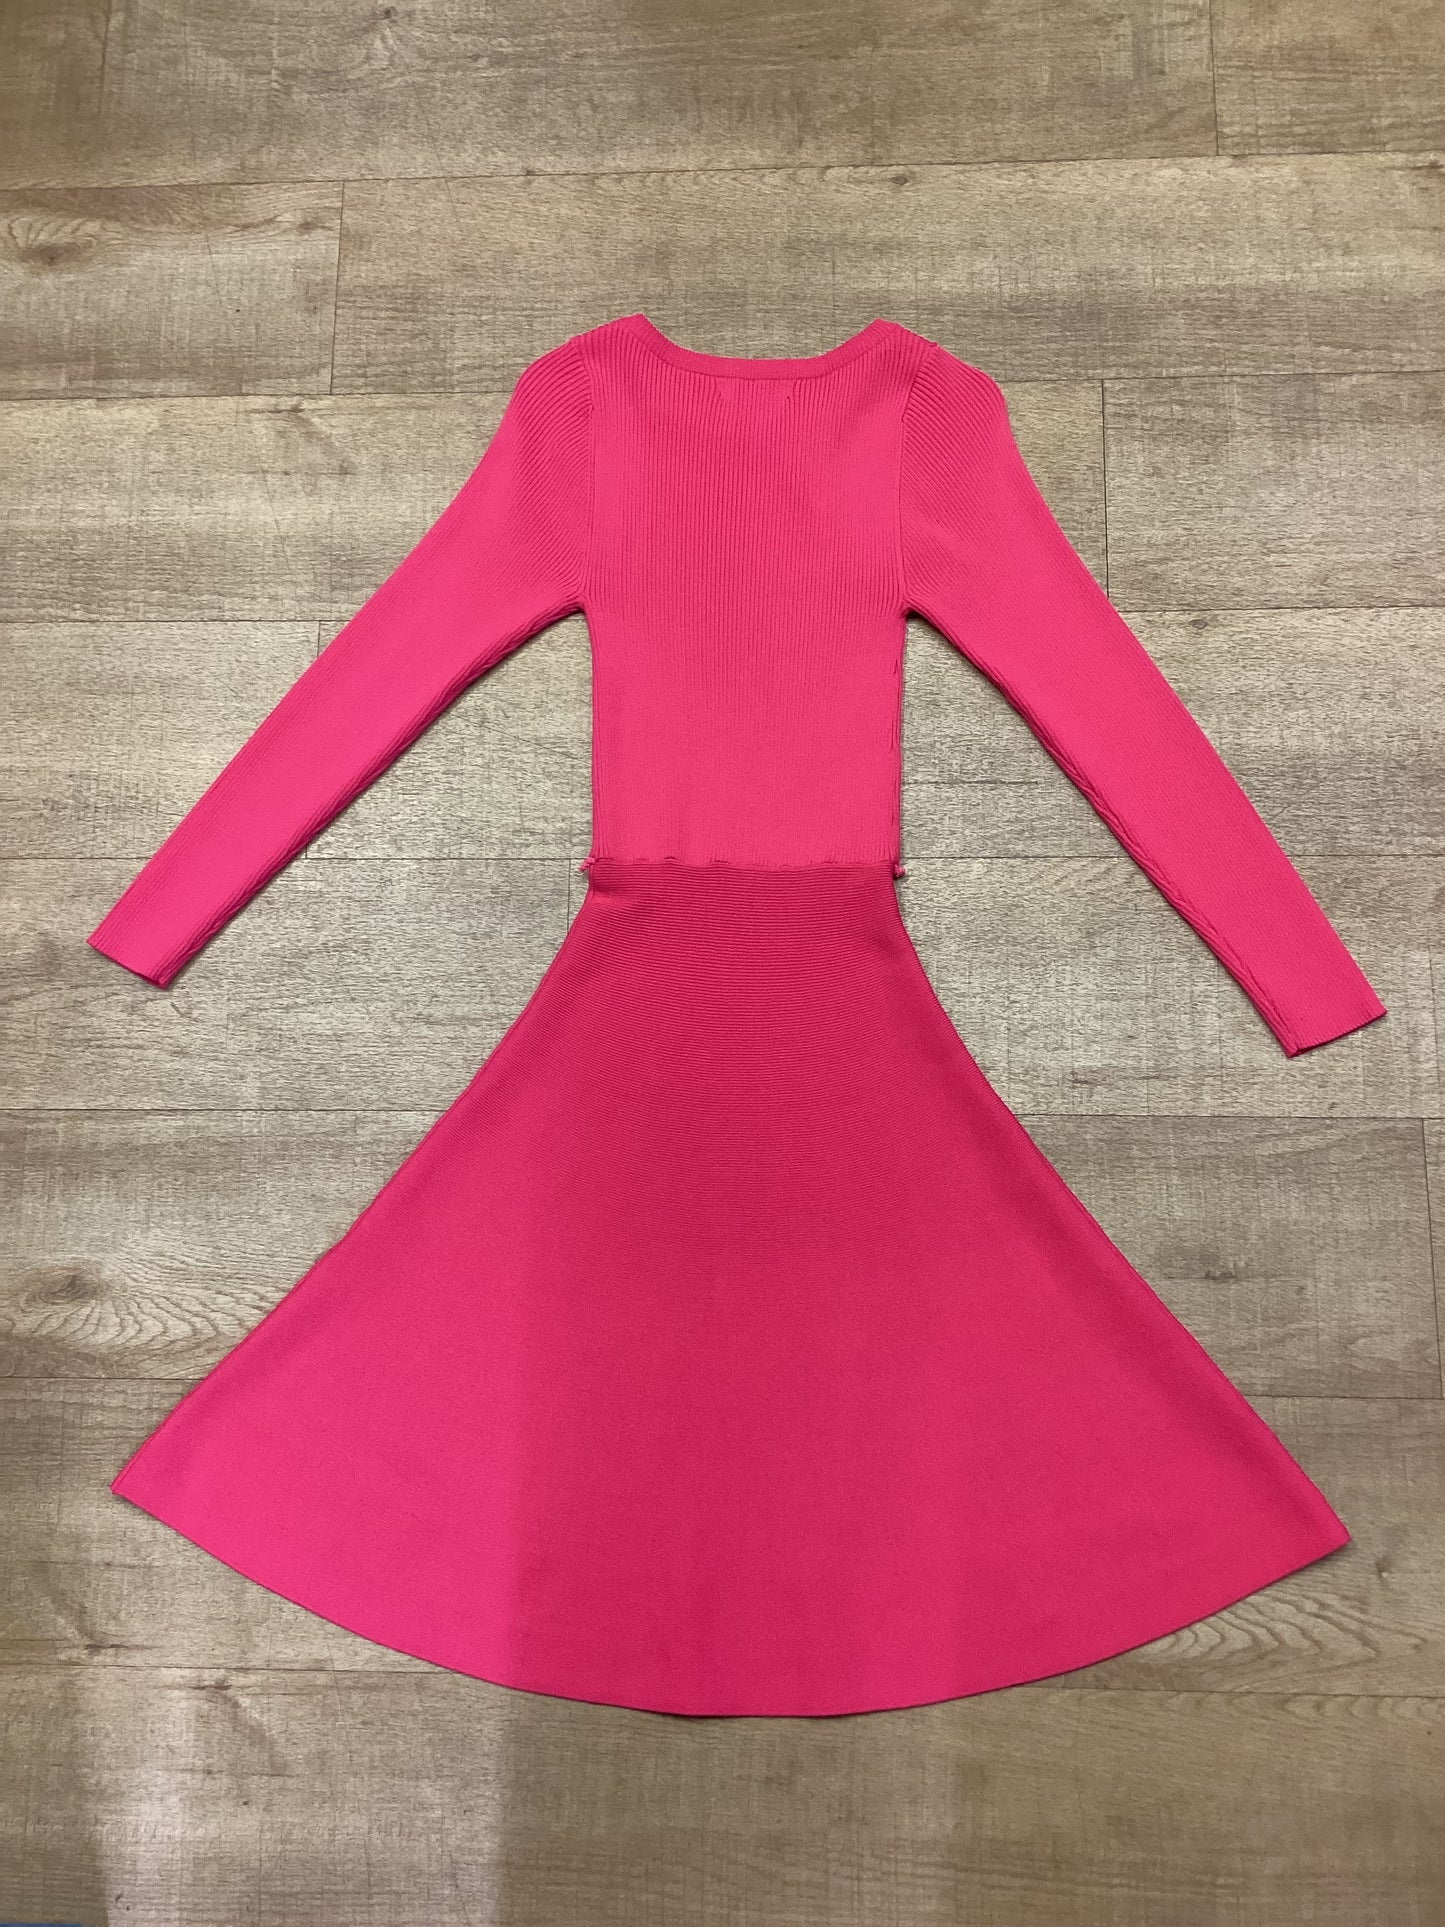 BNWT Karen Millen Long Sleeved Pink Dress Size XS - Missing Belt